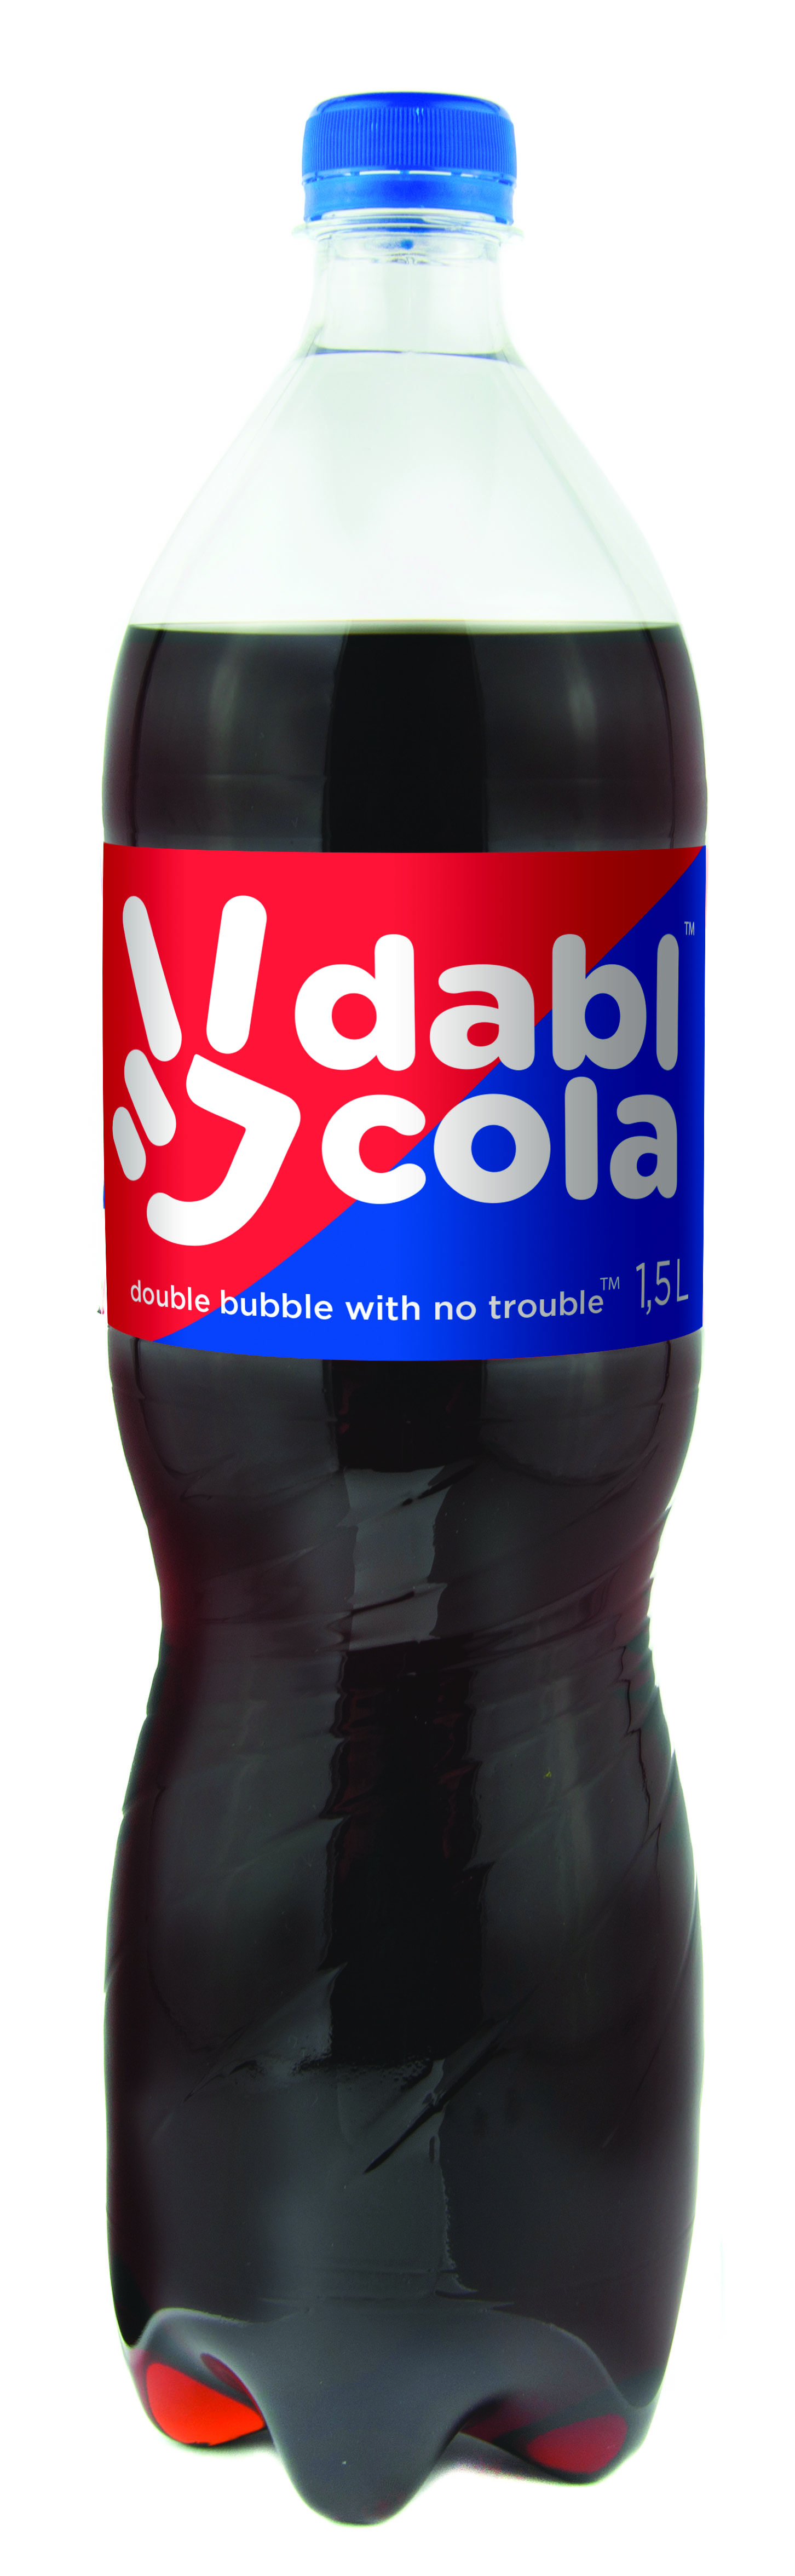 Cola1,5.jpg